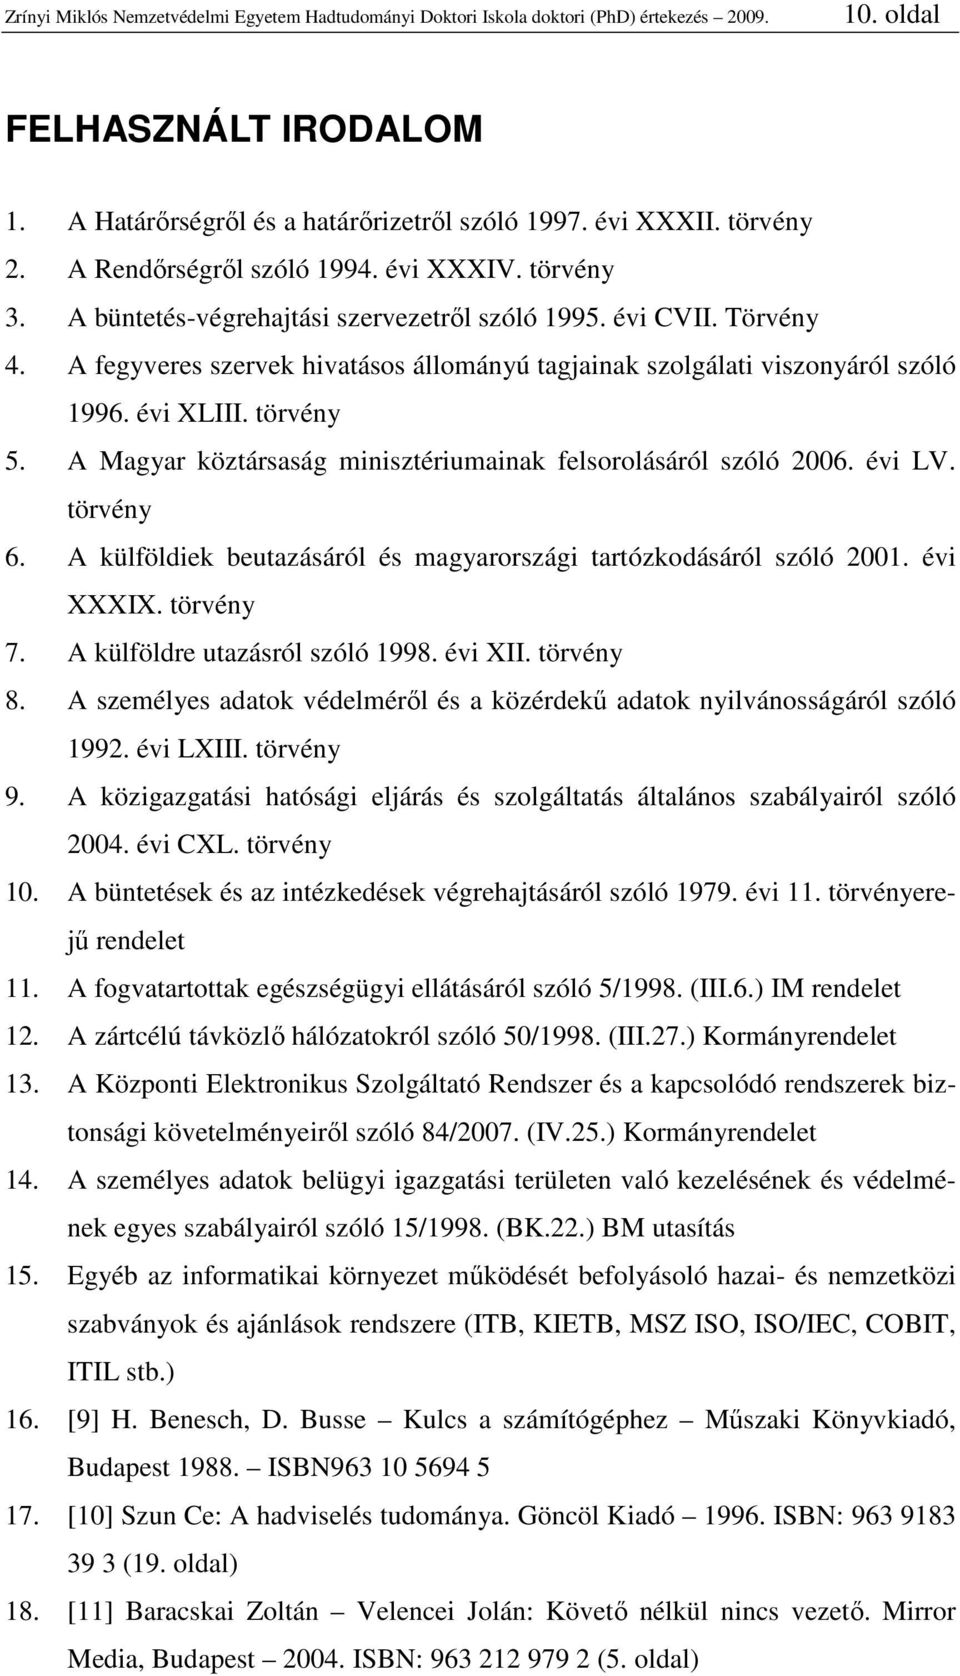 A fegyveres szervek hivatásos állományú tagjainak szolgálati viszonyáról szóló 1996. évi XLIII. törvény 5. A Magyar köztársaság minisztériumainak felsorolásáról szóló 2006. évi LV. törvény 6.